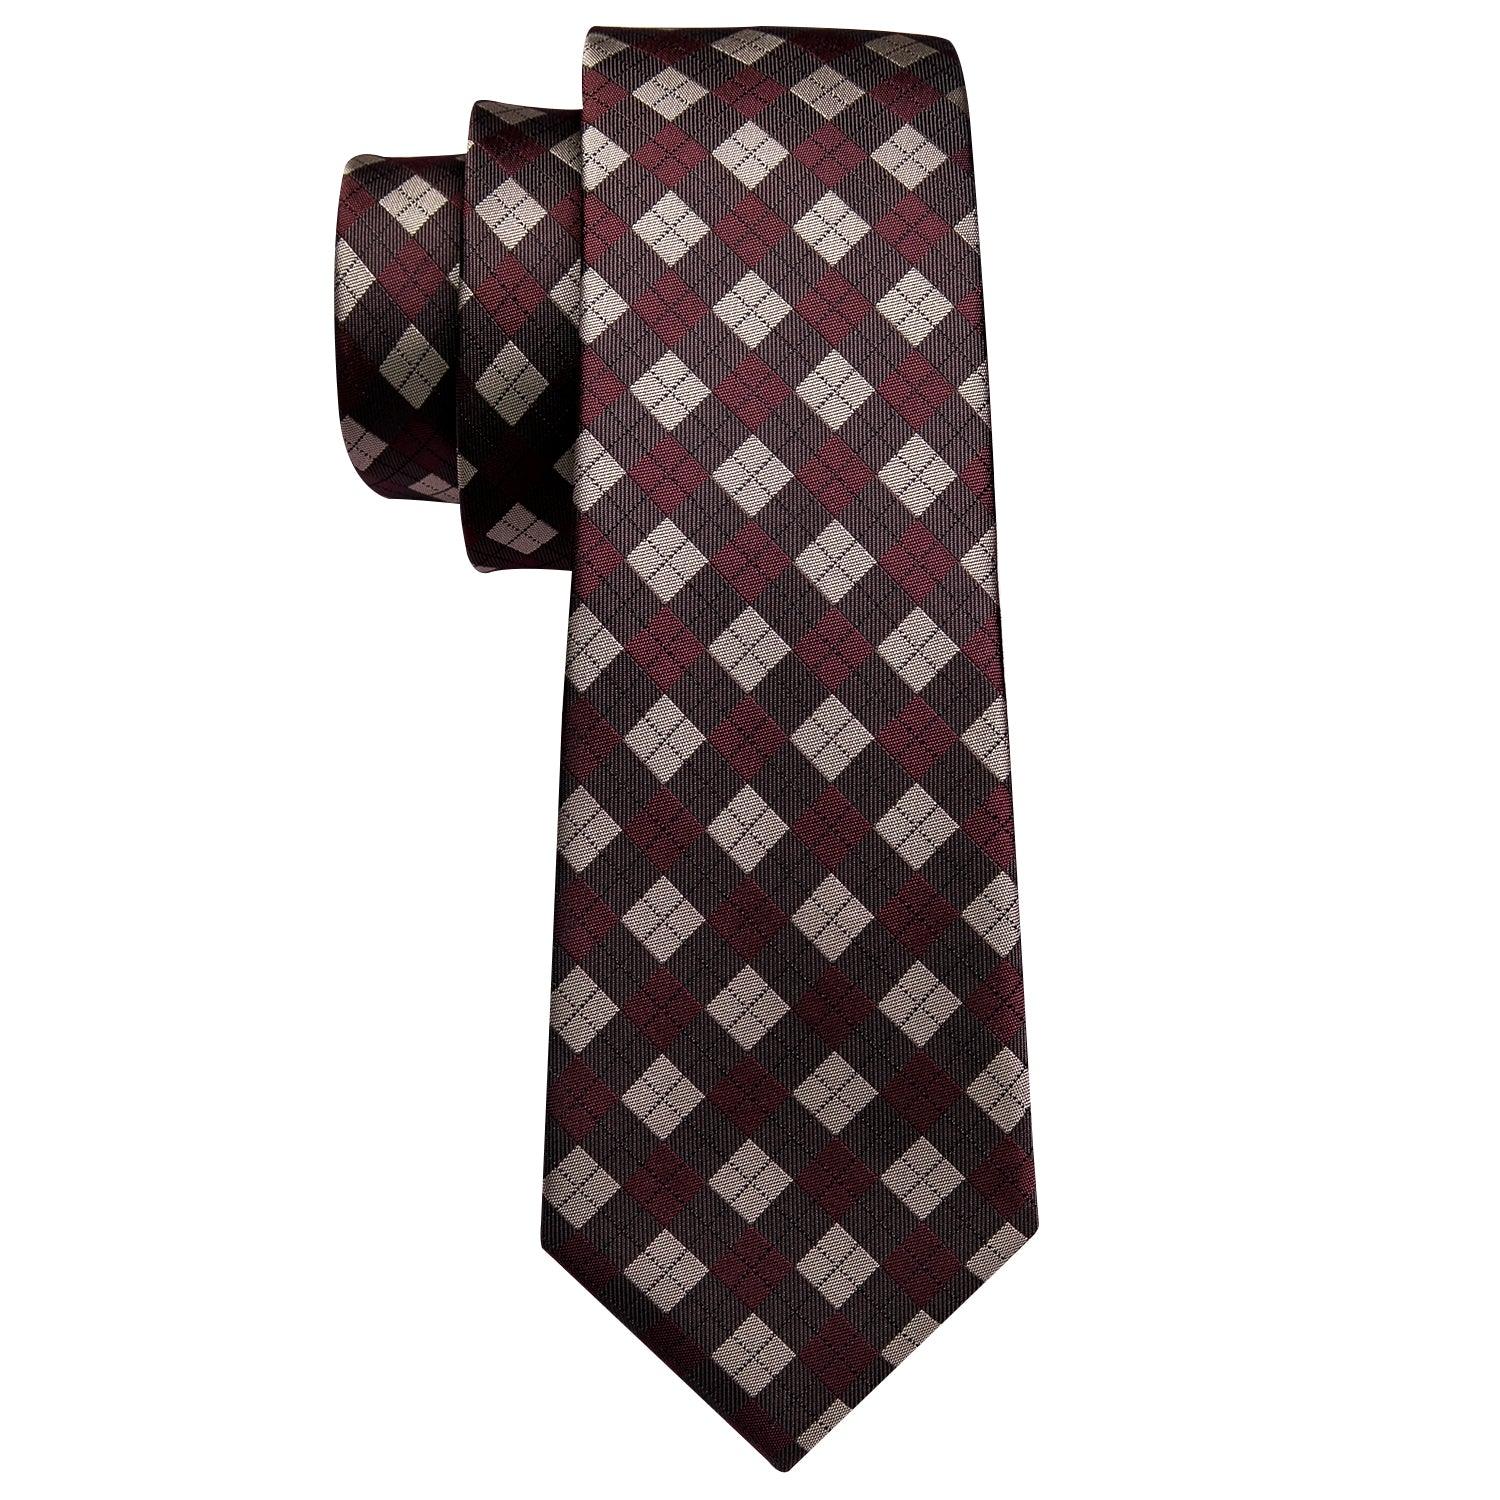 Red Brown Plaid Silk Tie Pocket Square Cufflink Set - STYLETIE